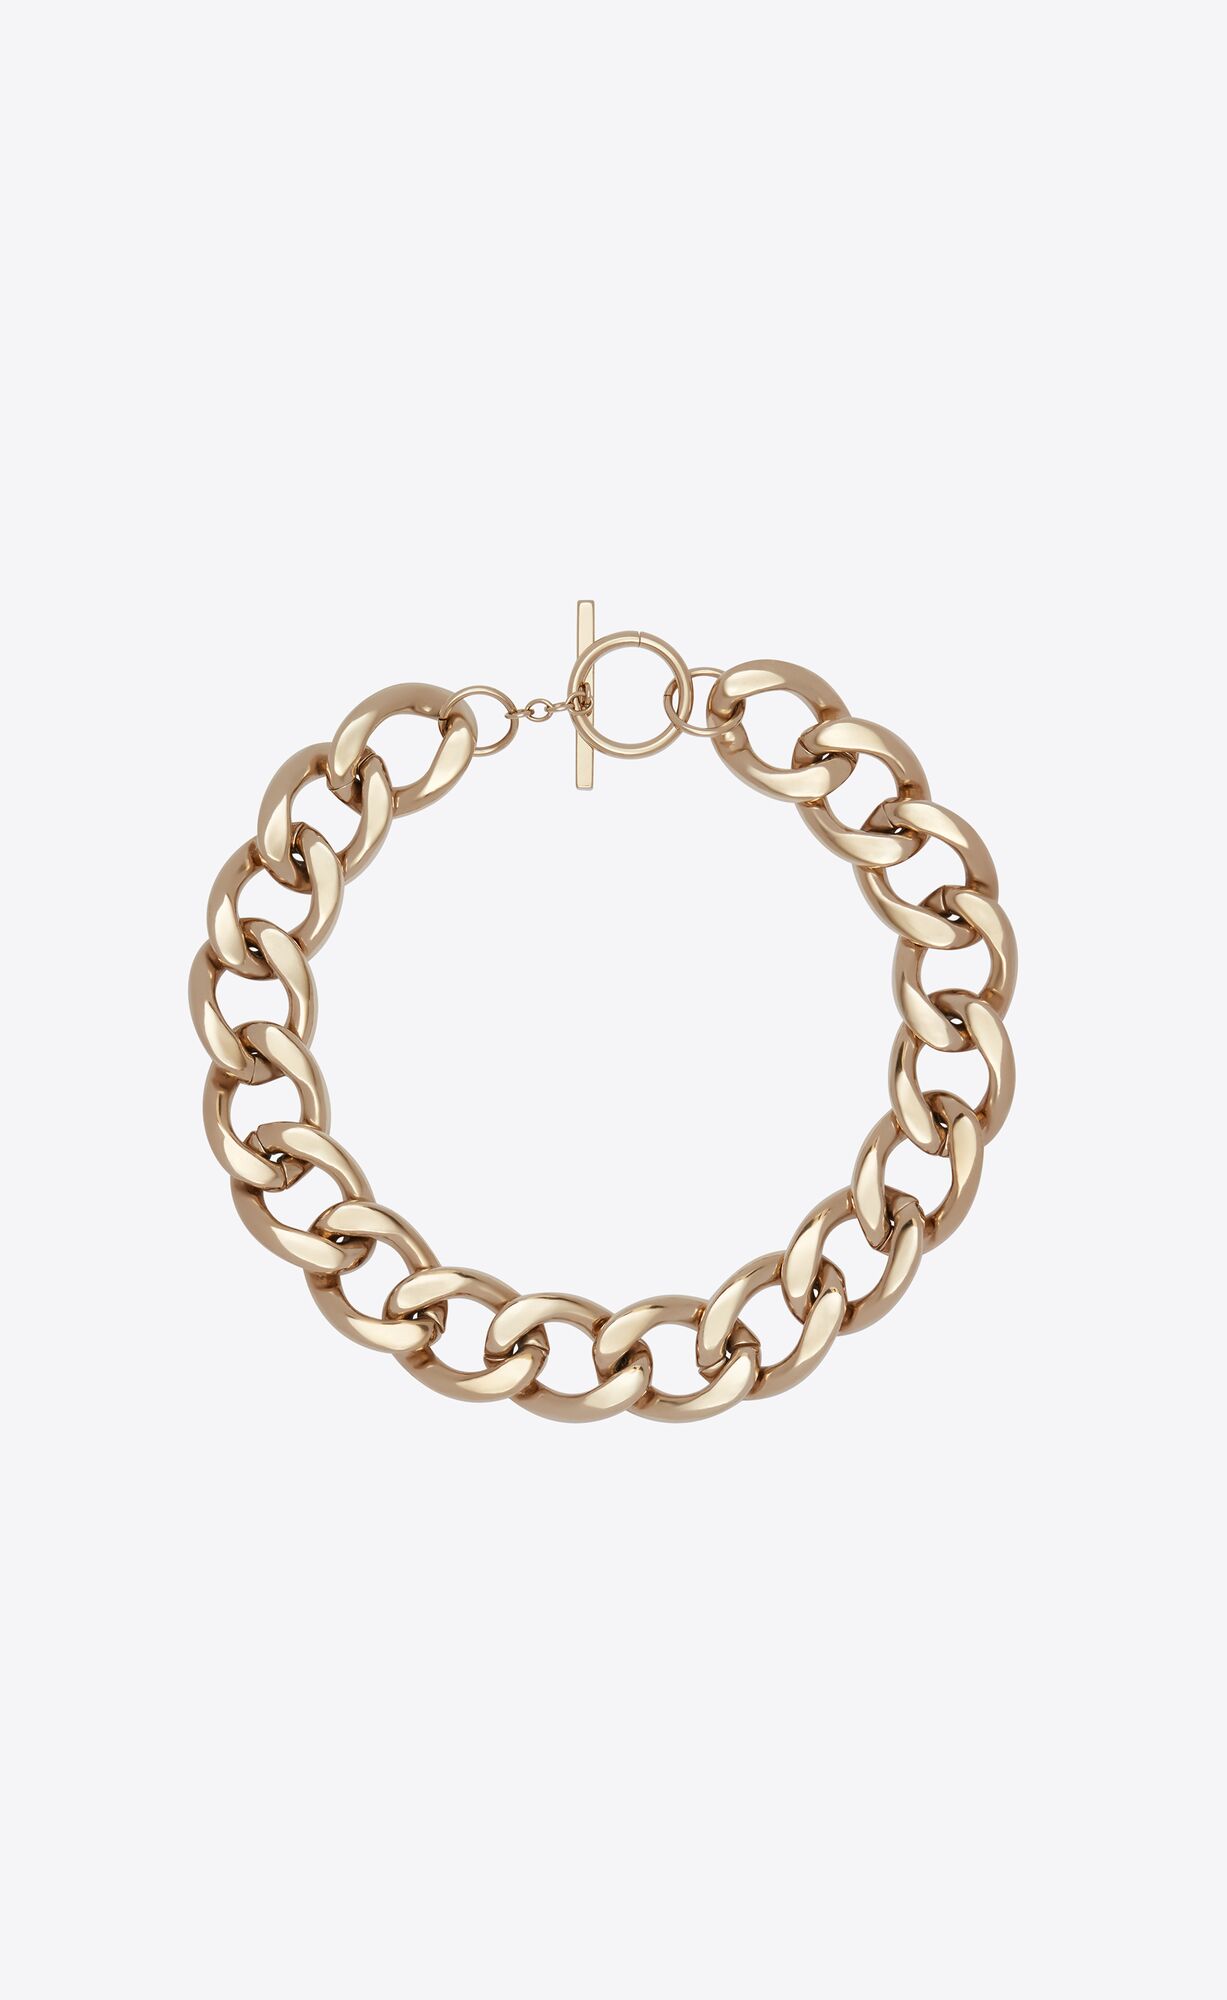 Women's Necklaces & Chokers | Gold & Chain | Saint Laurent | YSL